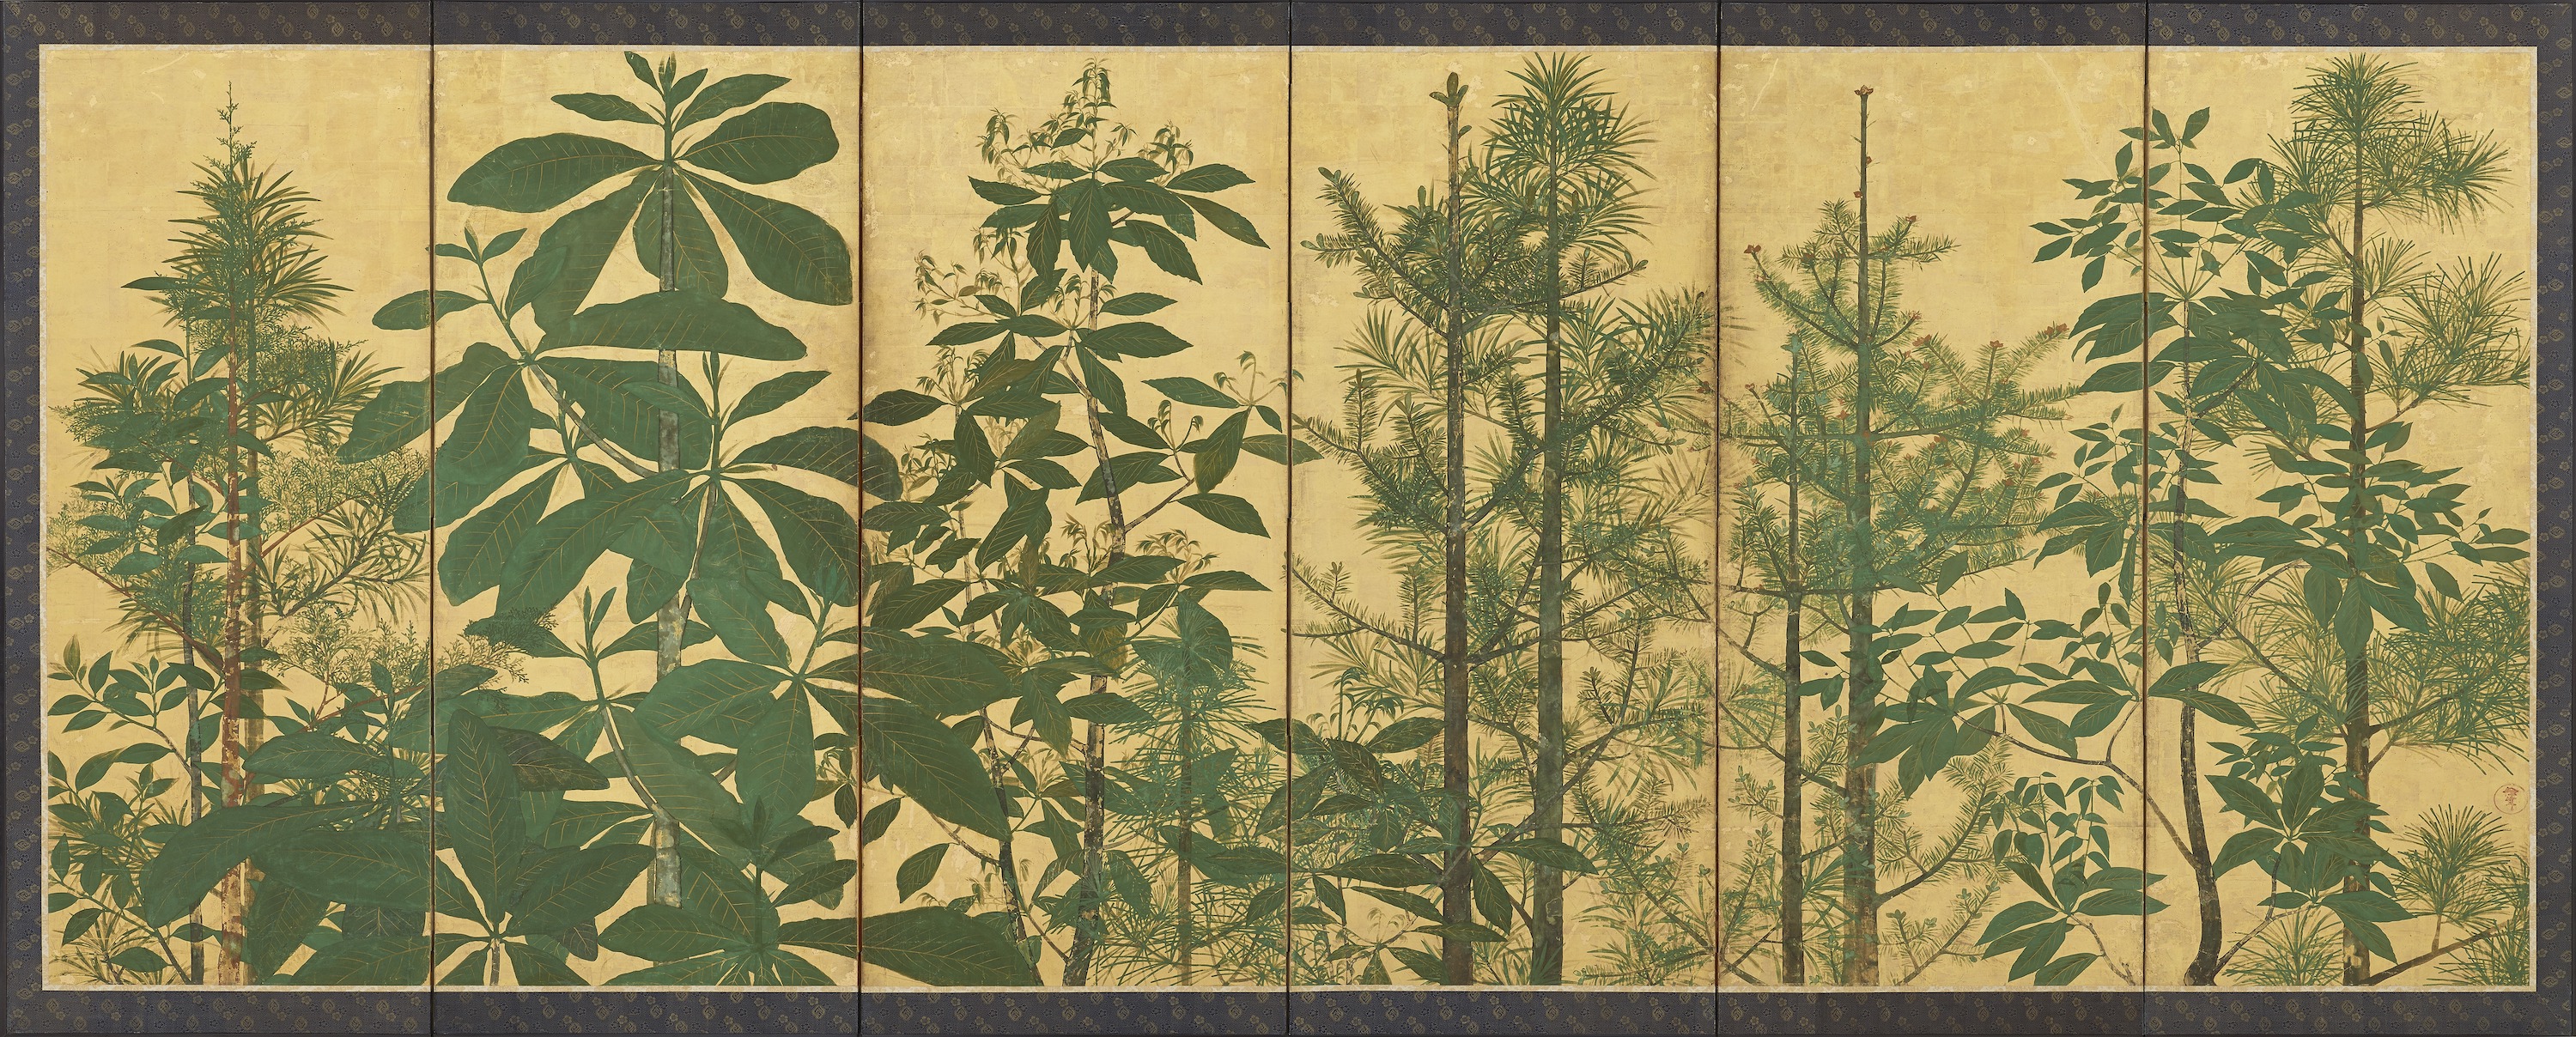 Alberi by  Originale di I-nen Seal - Periodo Edo, metà XVII secolo - 154 x 357.8 cm 